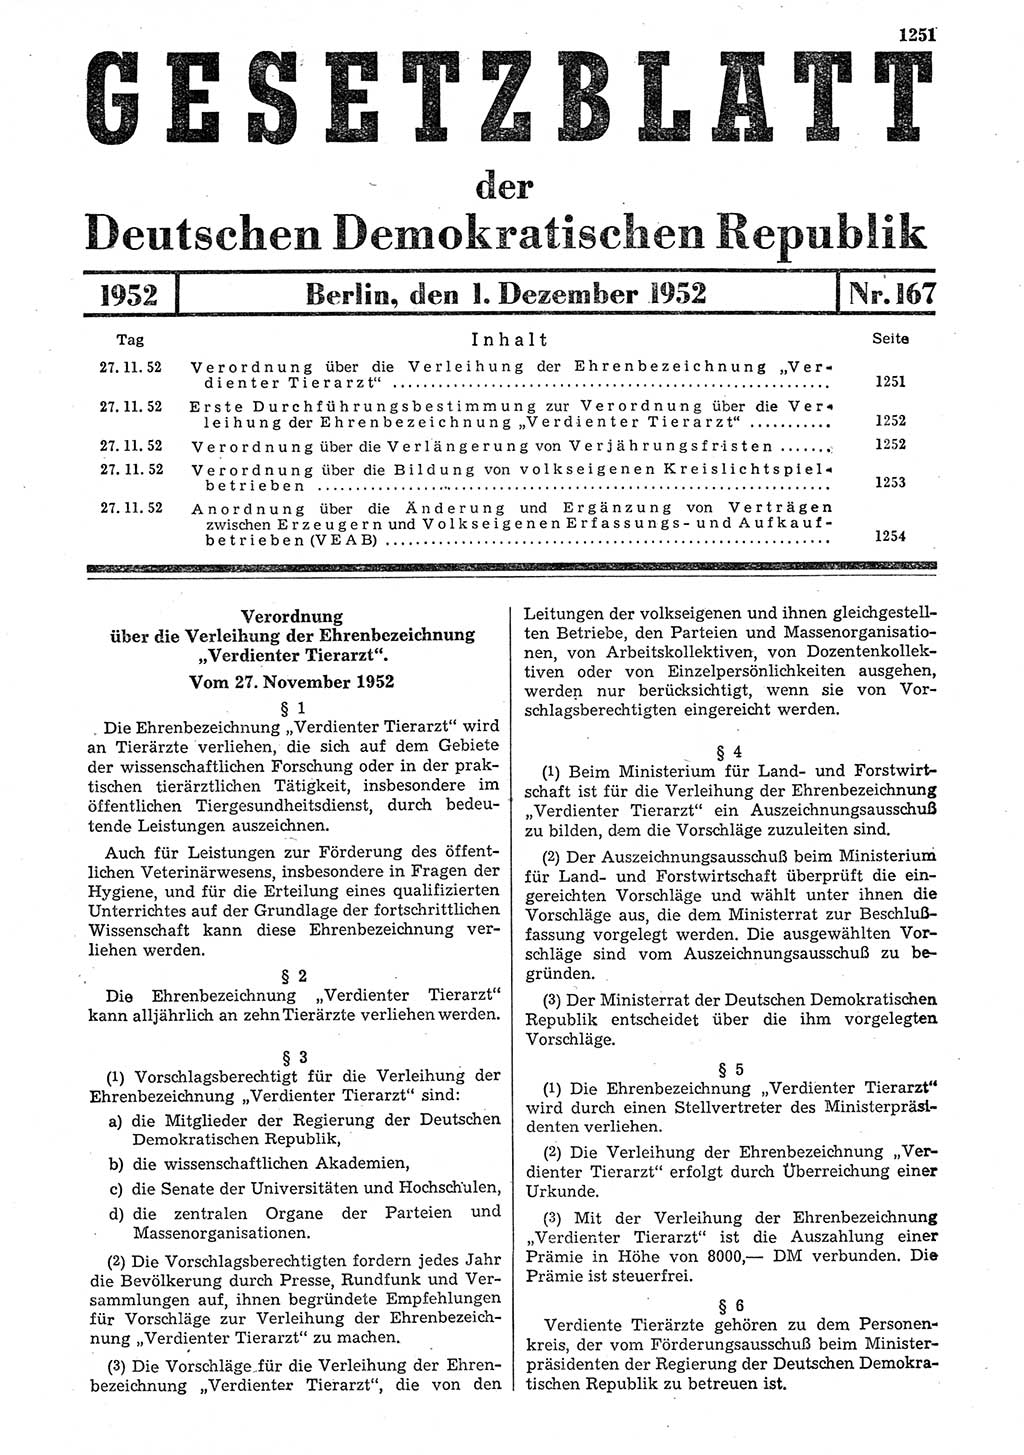 Gesetzblatt (GBl.) der Deutschen Demokratischen Republik (DDR) 1952, Seite 1251 (GBl. DDR 1952, S. 1251)